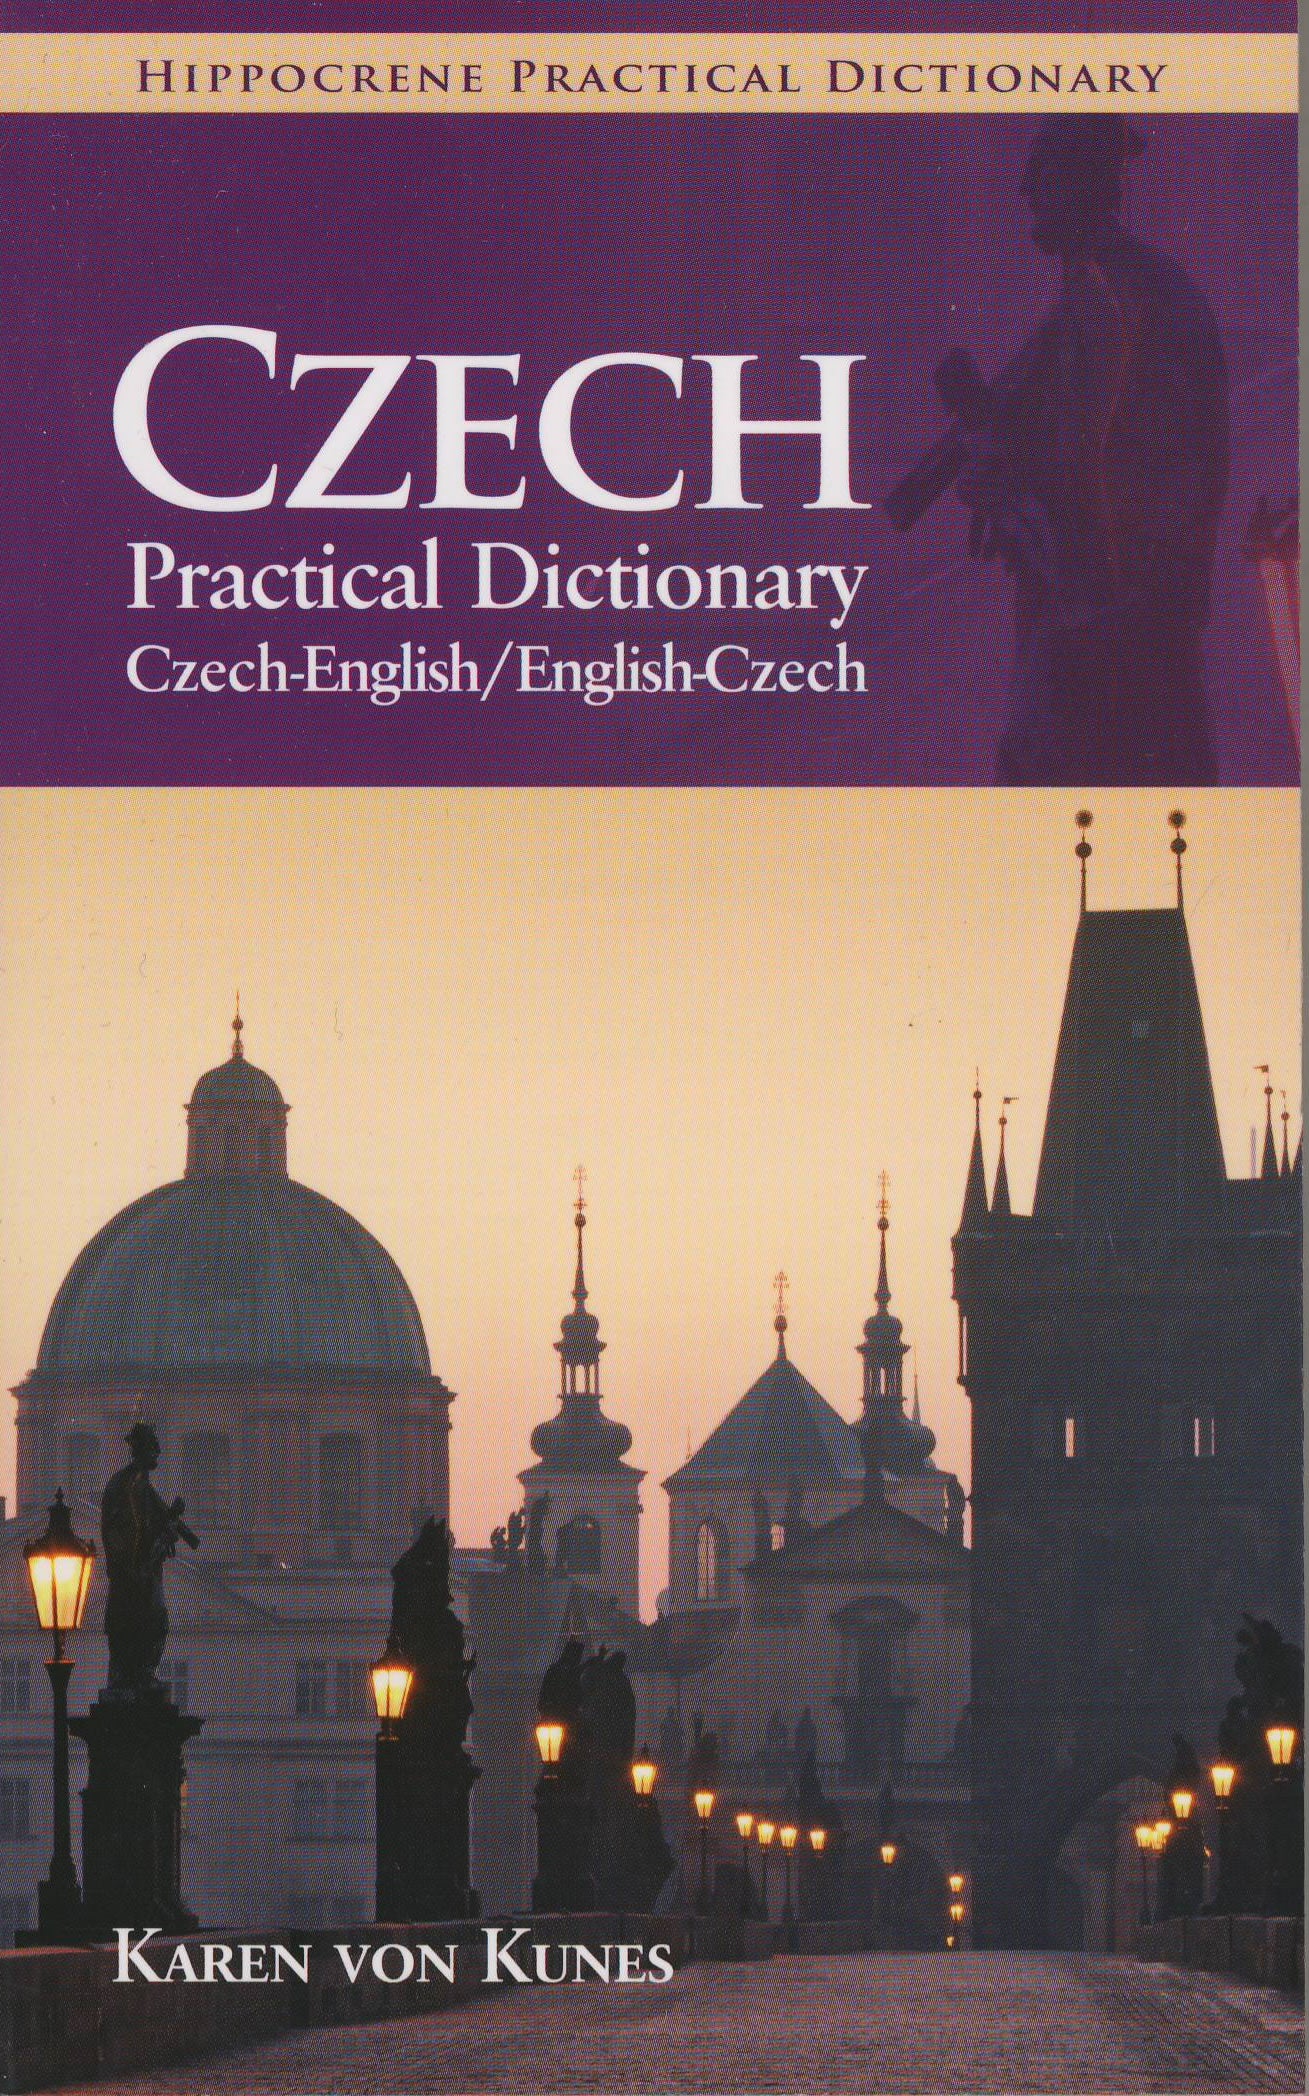 Czech-English / English-Czech Hipp Practical Dictionary